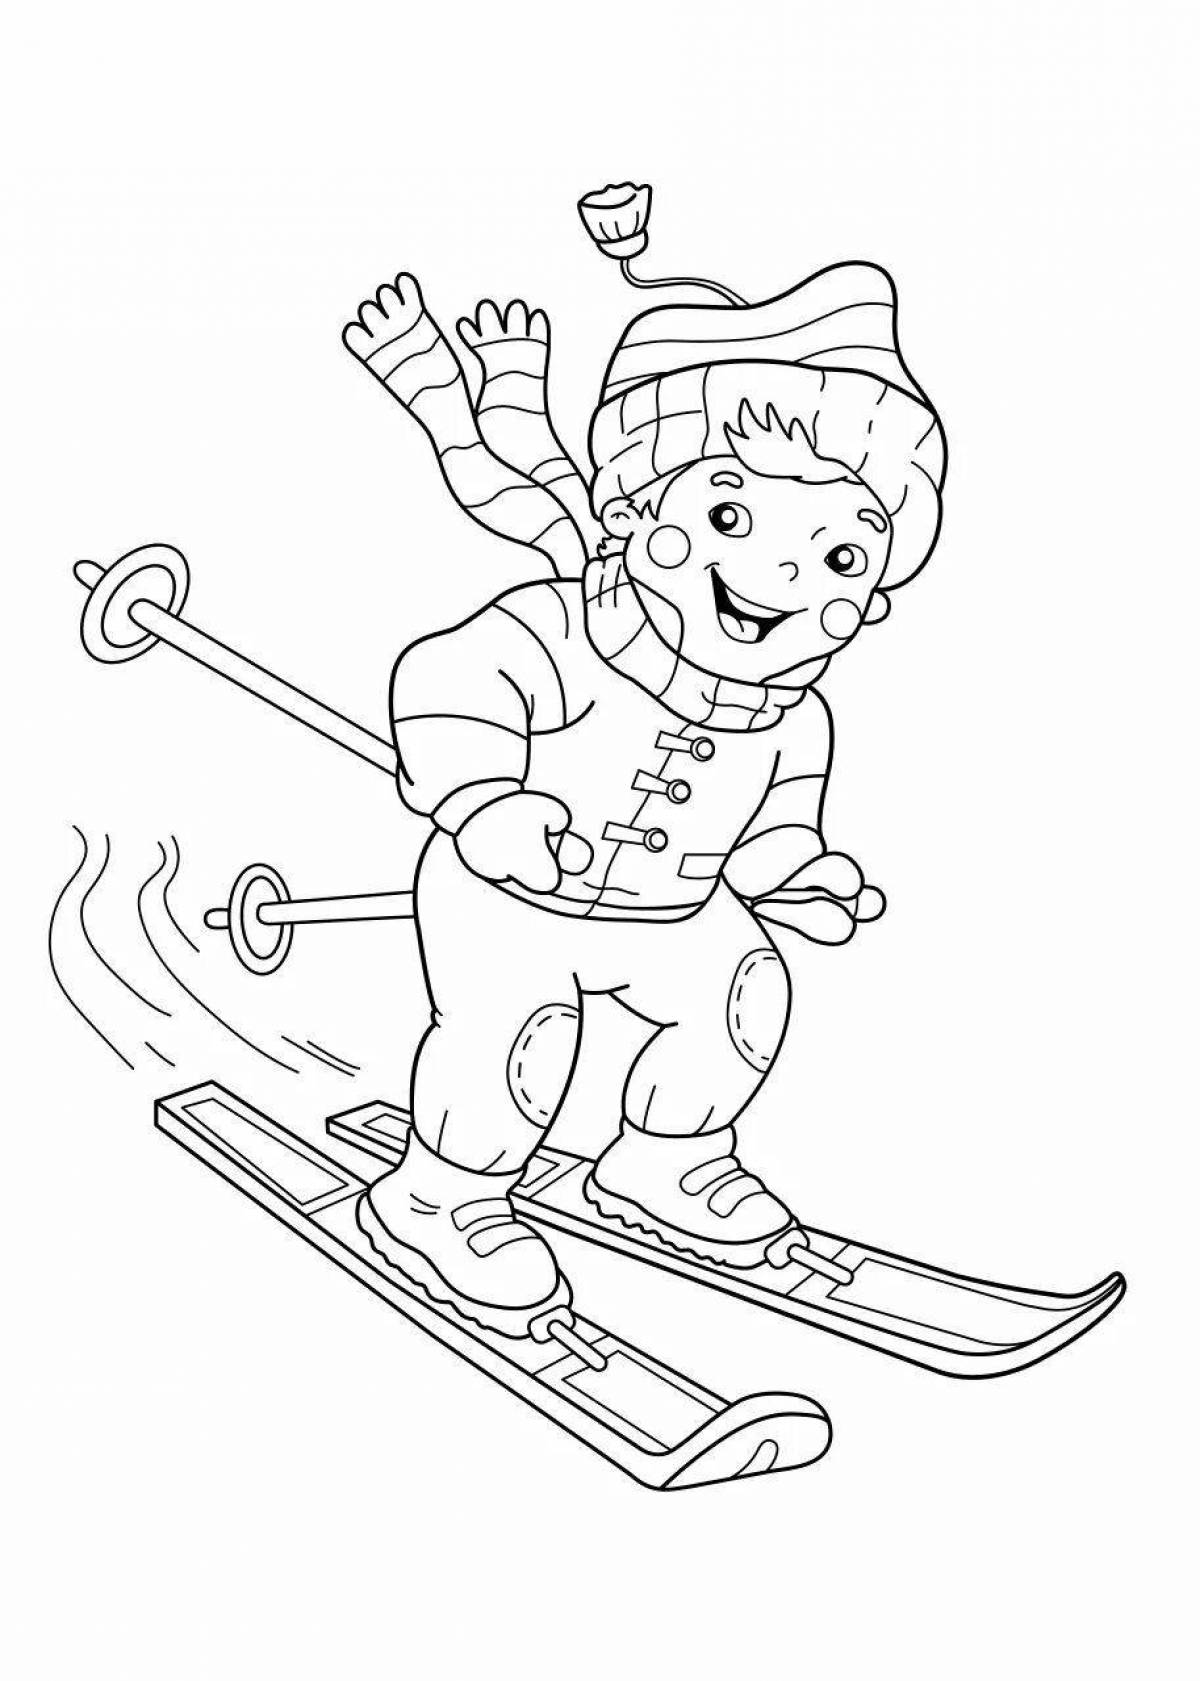 Динамические лыжи для детей